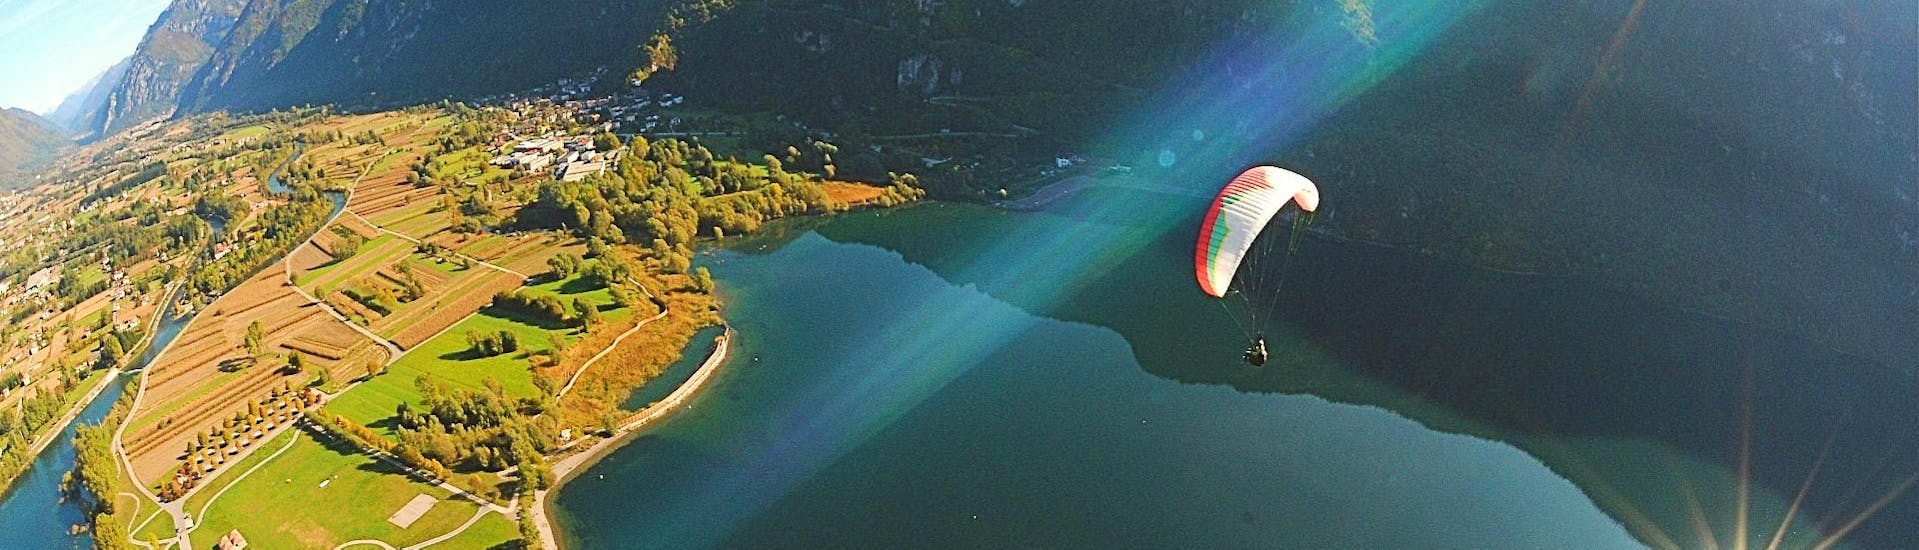 Vista de una experiencia de parapente en tándem con el lago y las montañas de Ledro durante el vuelo con Trentino Adventures.